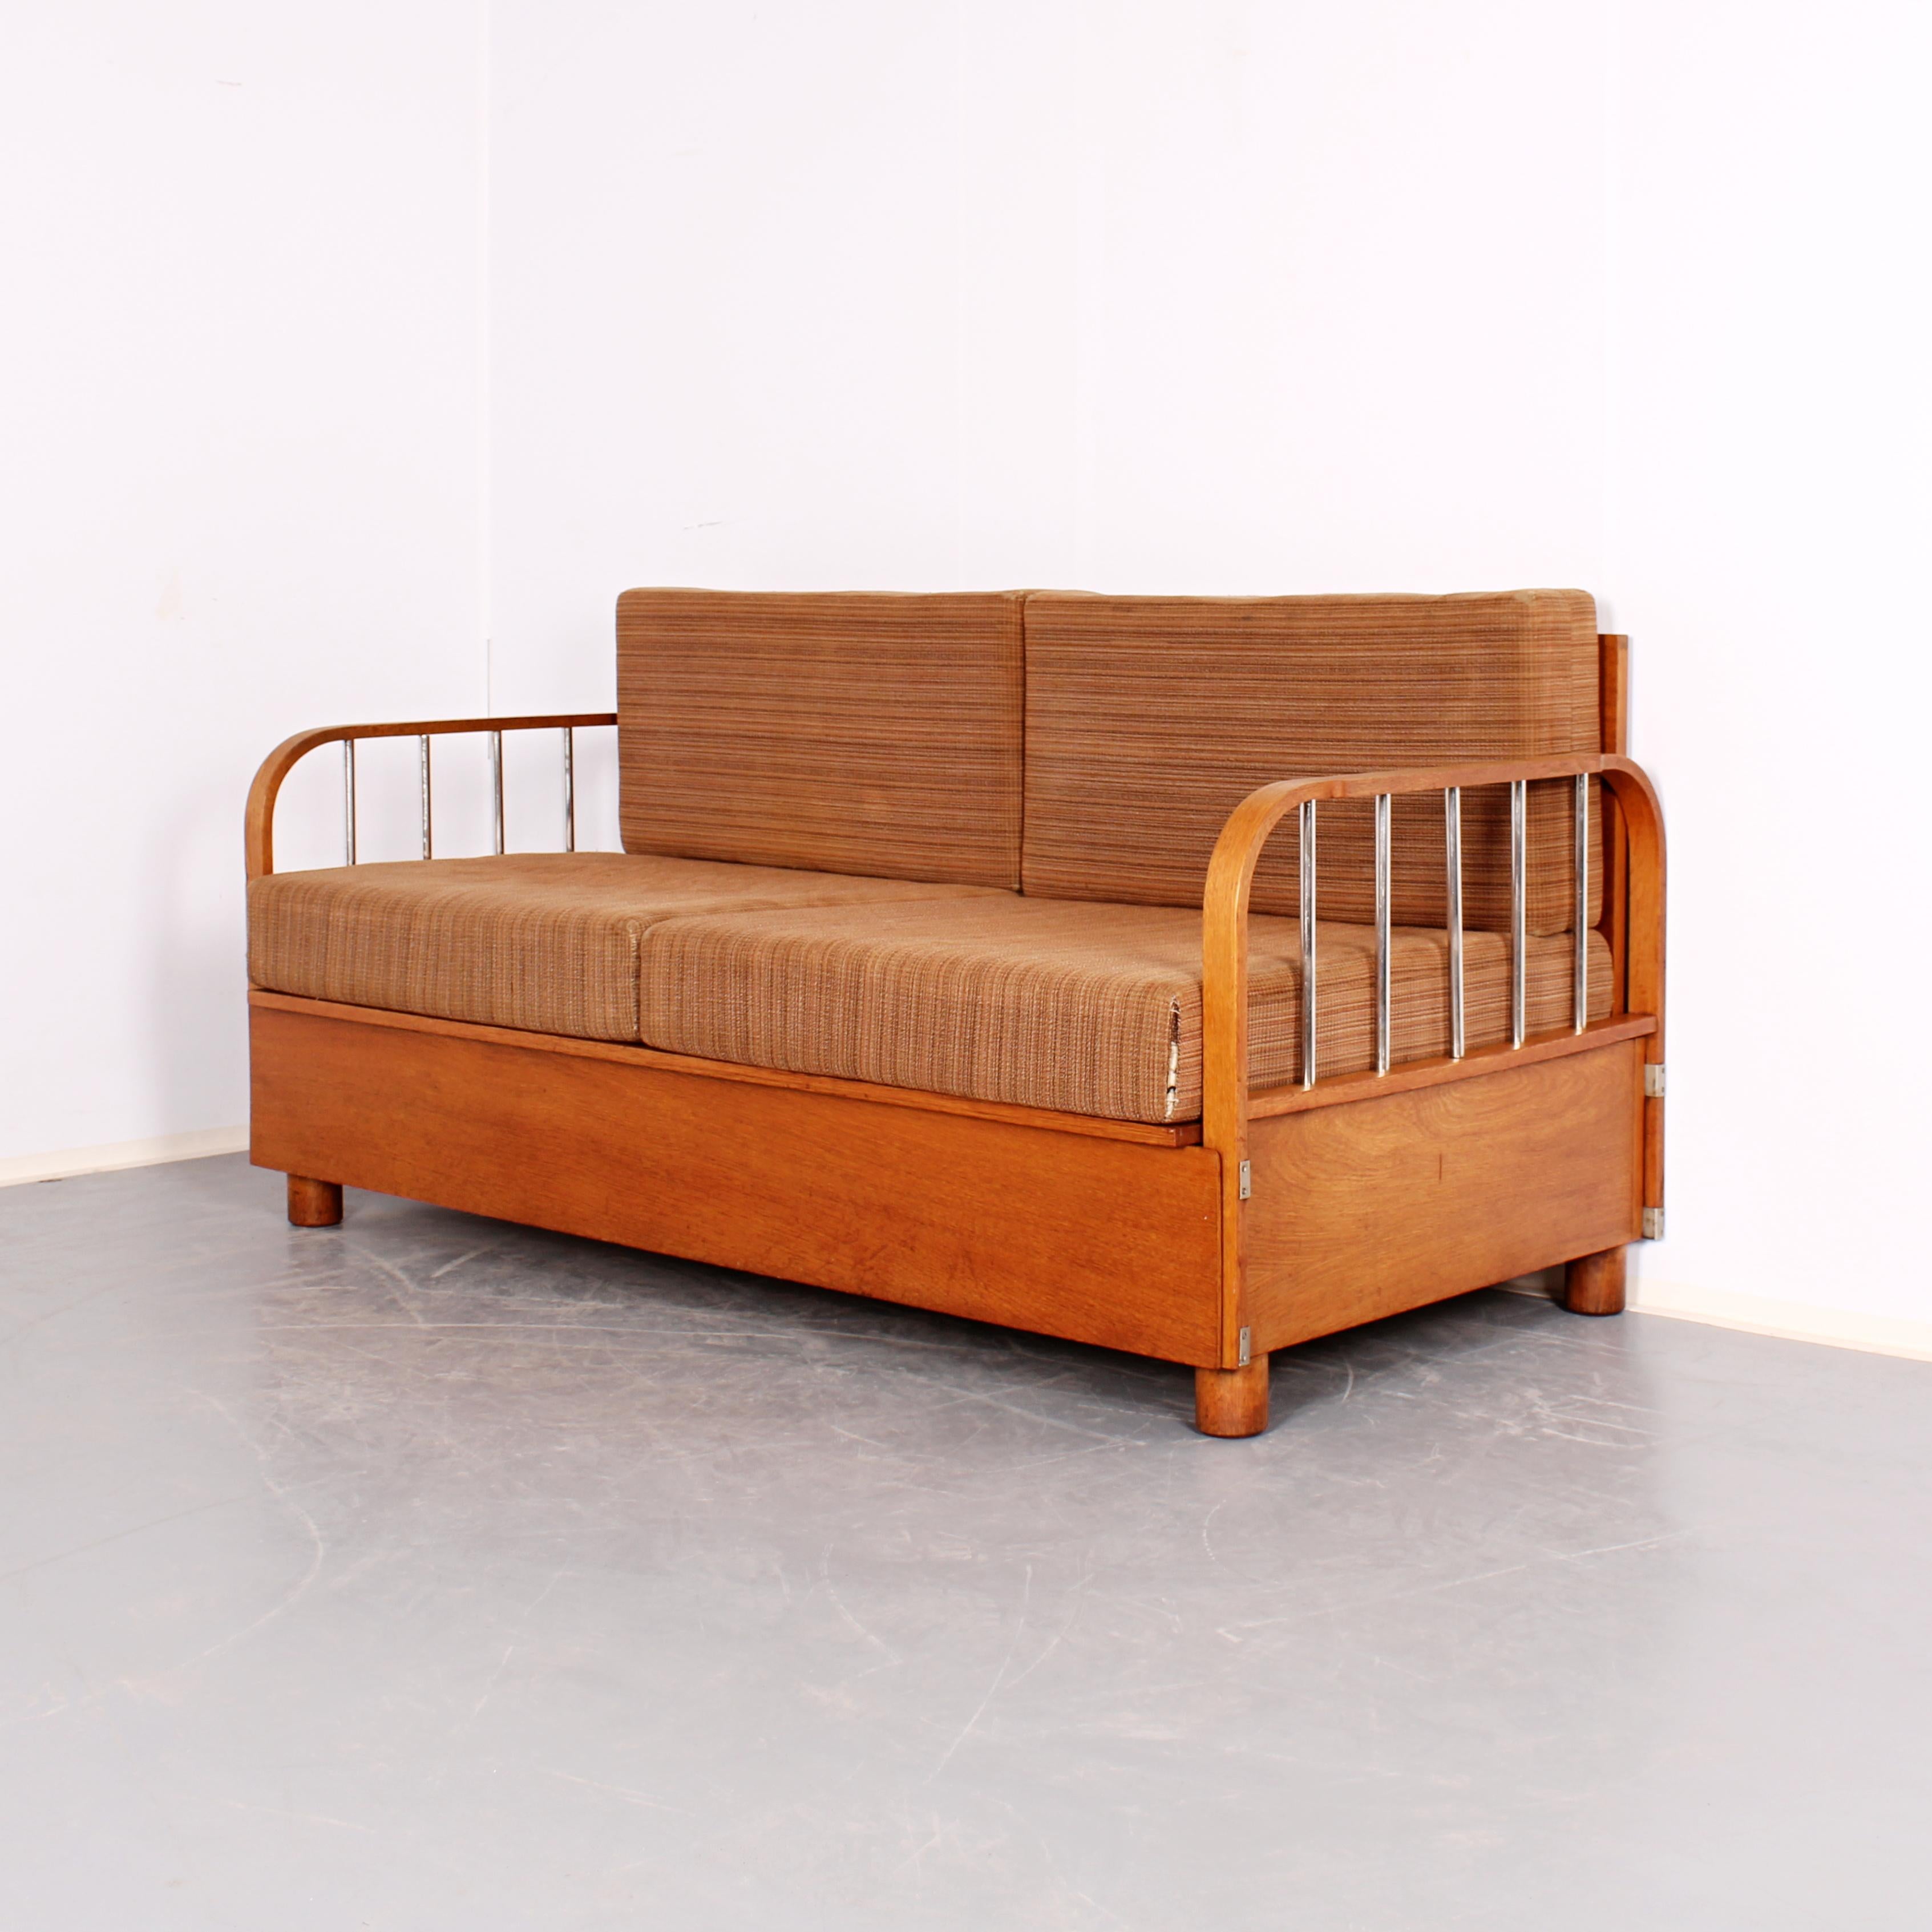 Ce canapé fonctionnaliste (modèle n° H-215) a été conçu par l'éminent architecte Jindrich Halabala pour la société de meubles UP Zavody. Ce canapé a été fabriqué en 1930 et constitue un bel exemple de fonctionnalisme tchécoslovaque d'avant-guerre.